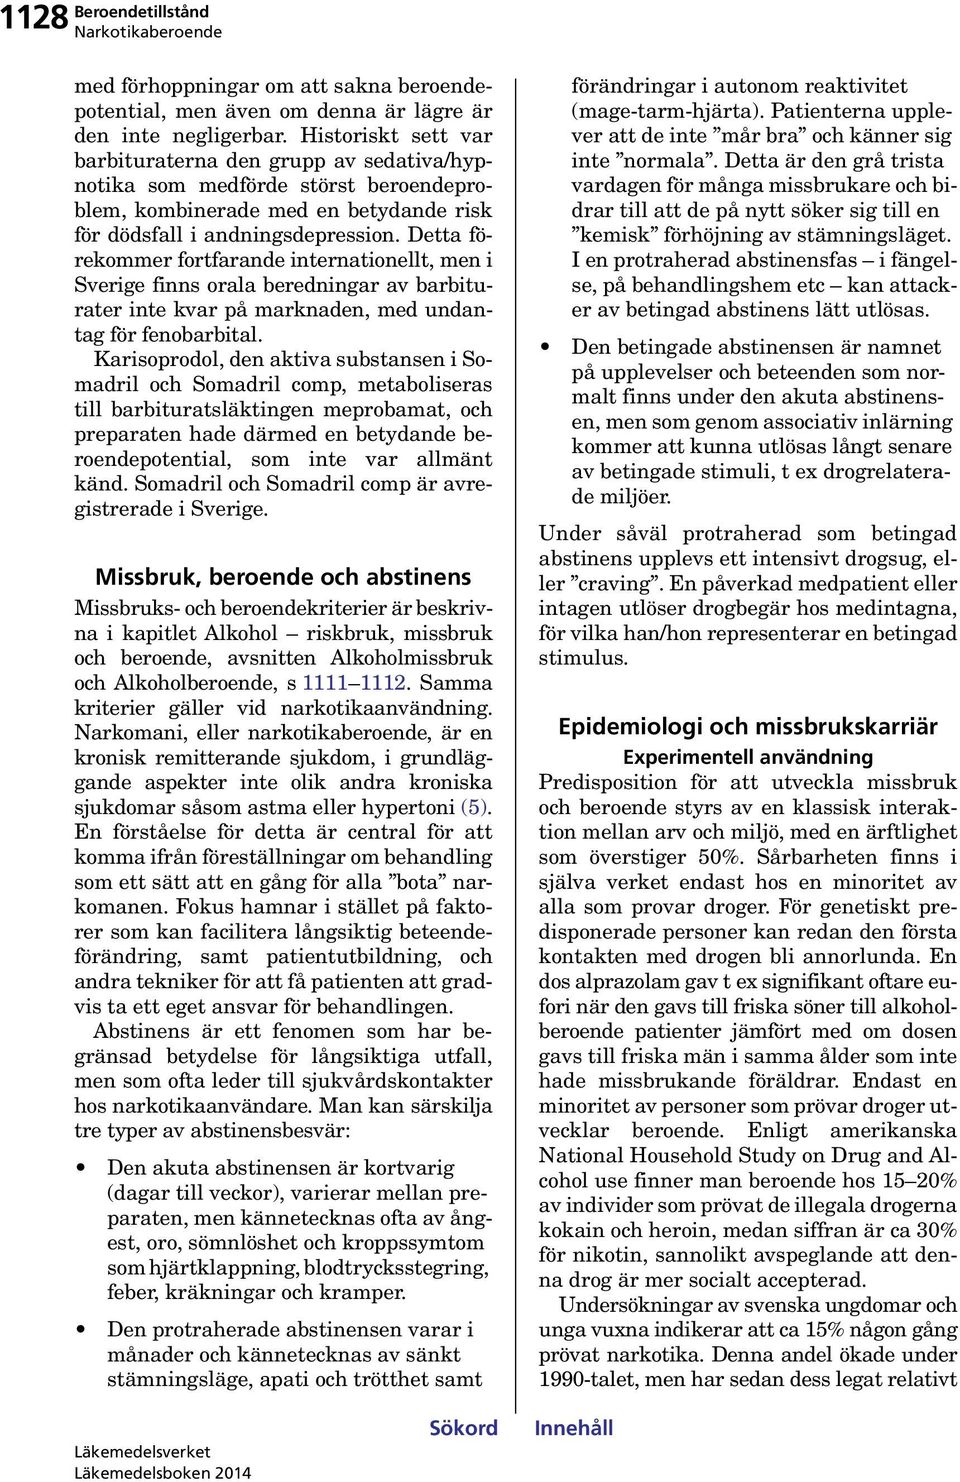 Detta förekommer fortfarande internationellt, men i Sverige finns orala beredningar av barbiturater inte kvar på marknaden, med undantag för fenobarbital.